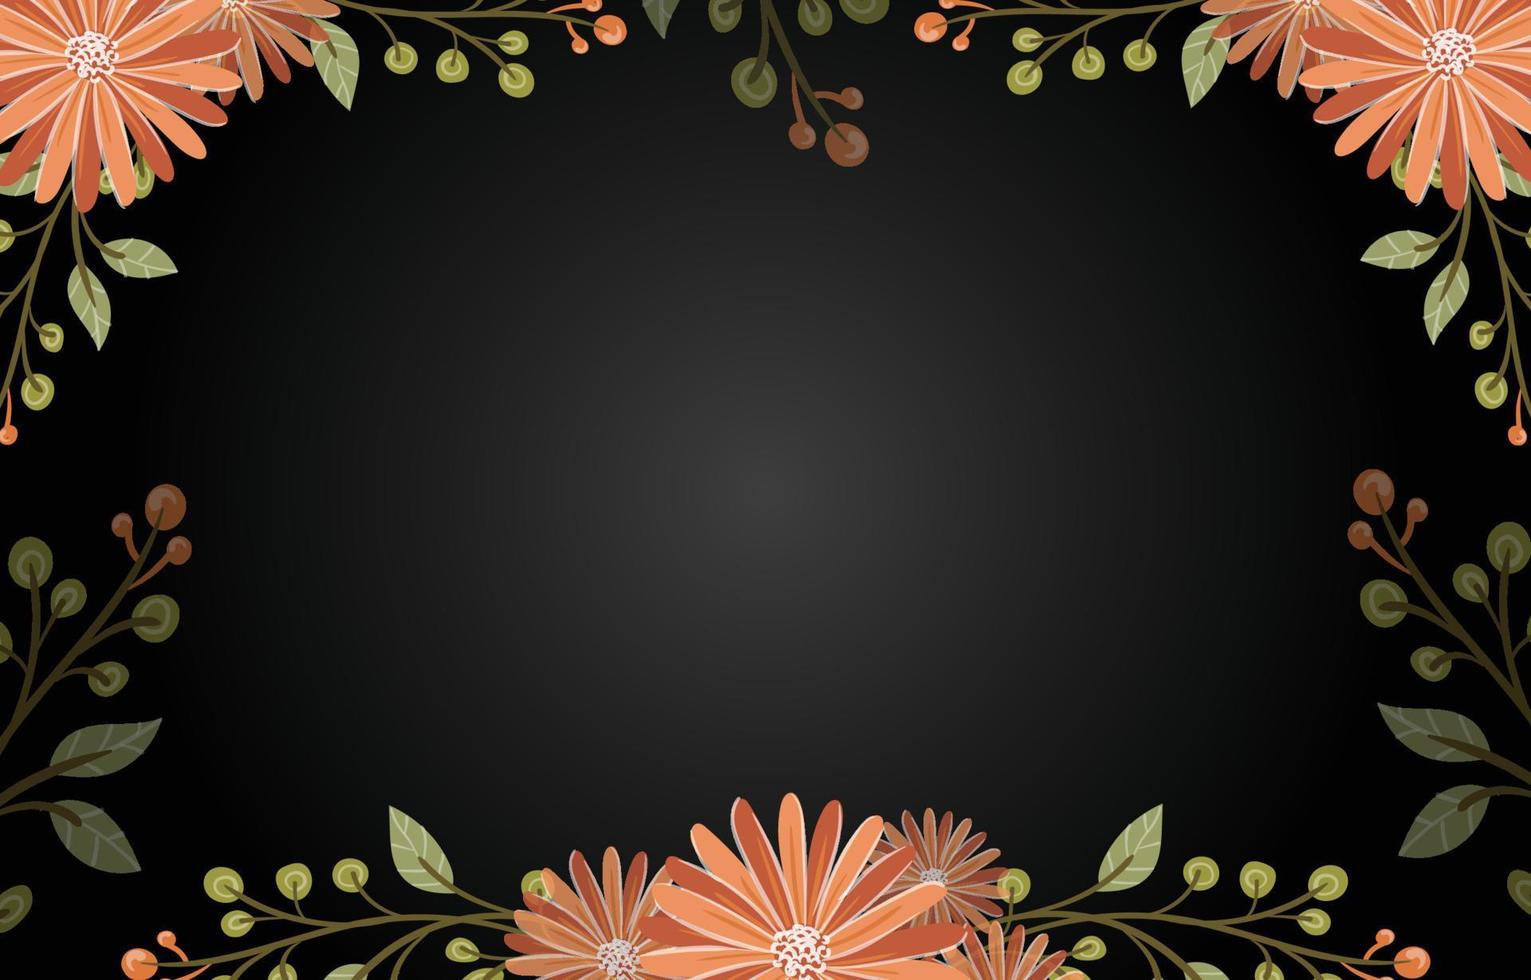 floral background on black vector